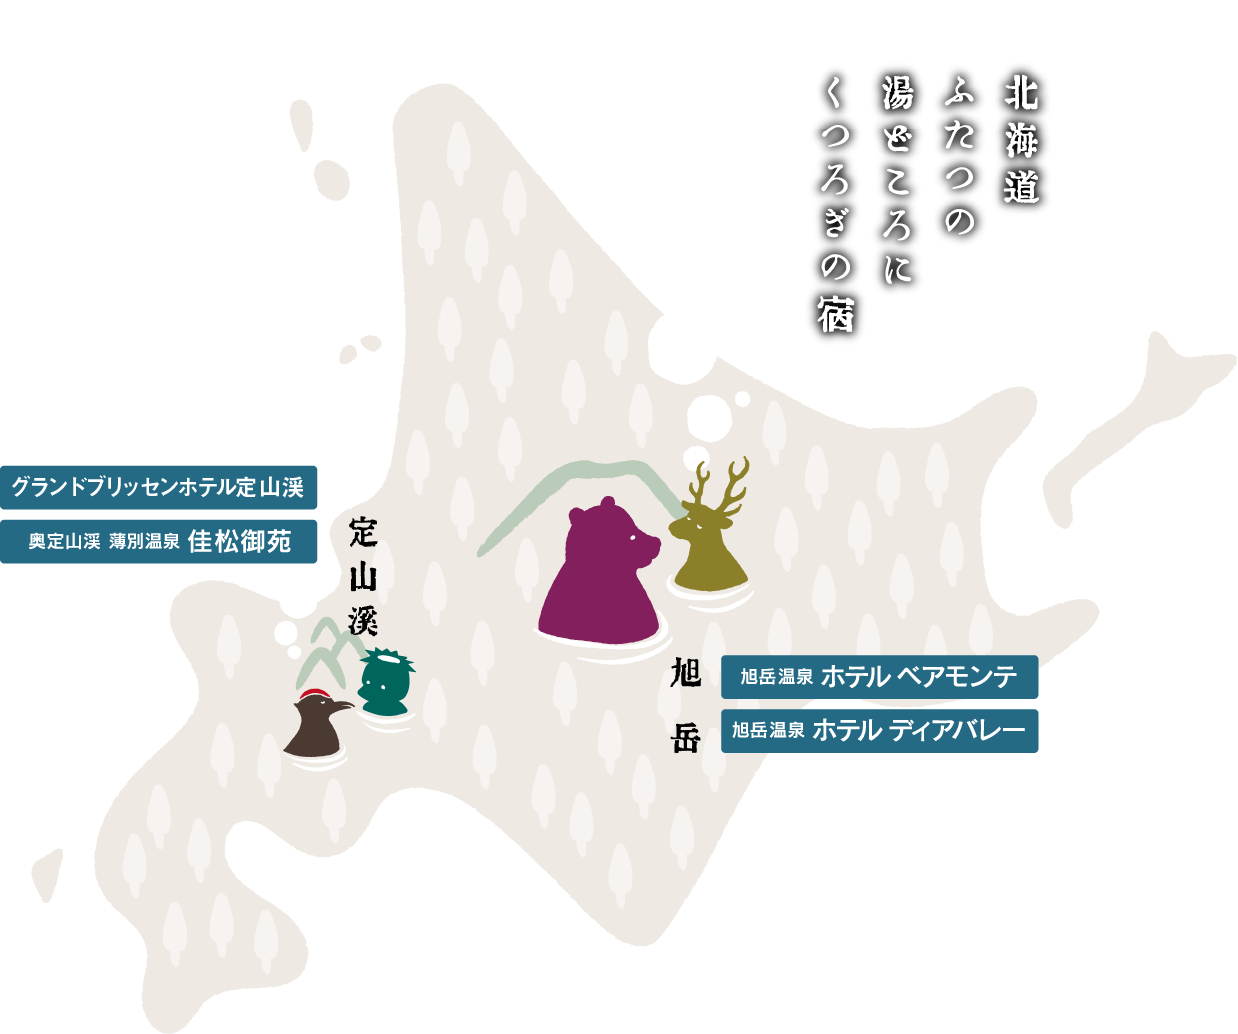 北海道ふたつの湯どころにくつろぎの宿。定山渓「佳松御苑」「新ホテル開業予定」。旭岳「ベアモンテ」「ディアバレー」